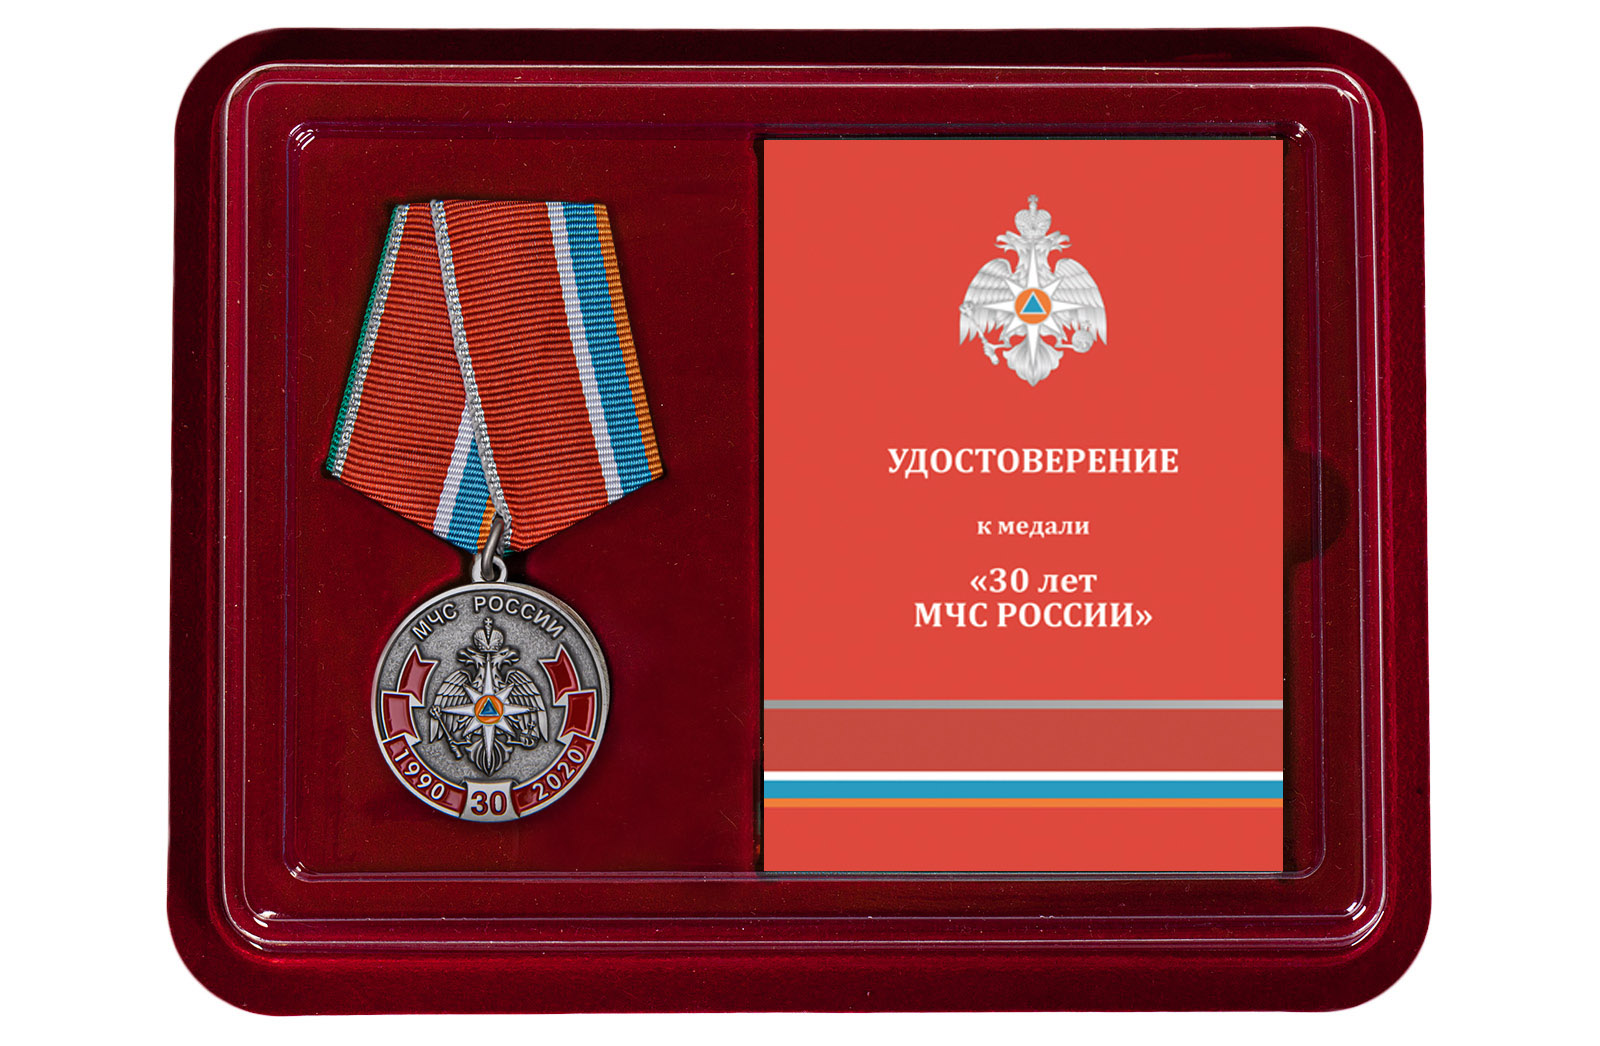 Купить медаль к 30-летию МЧС России в подарок